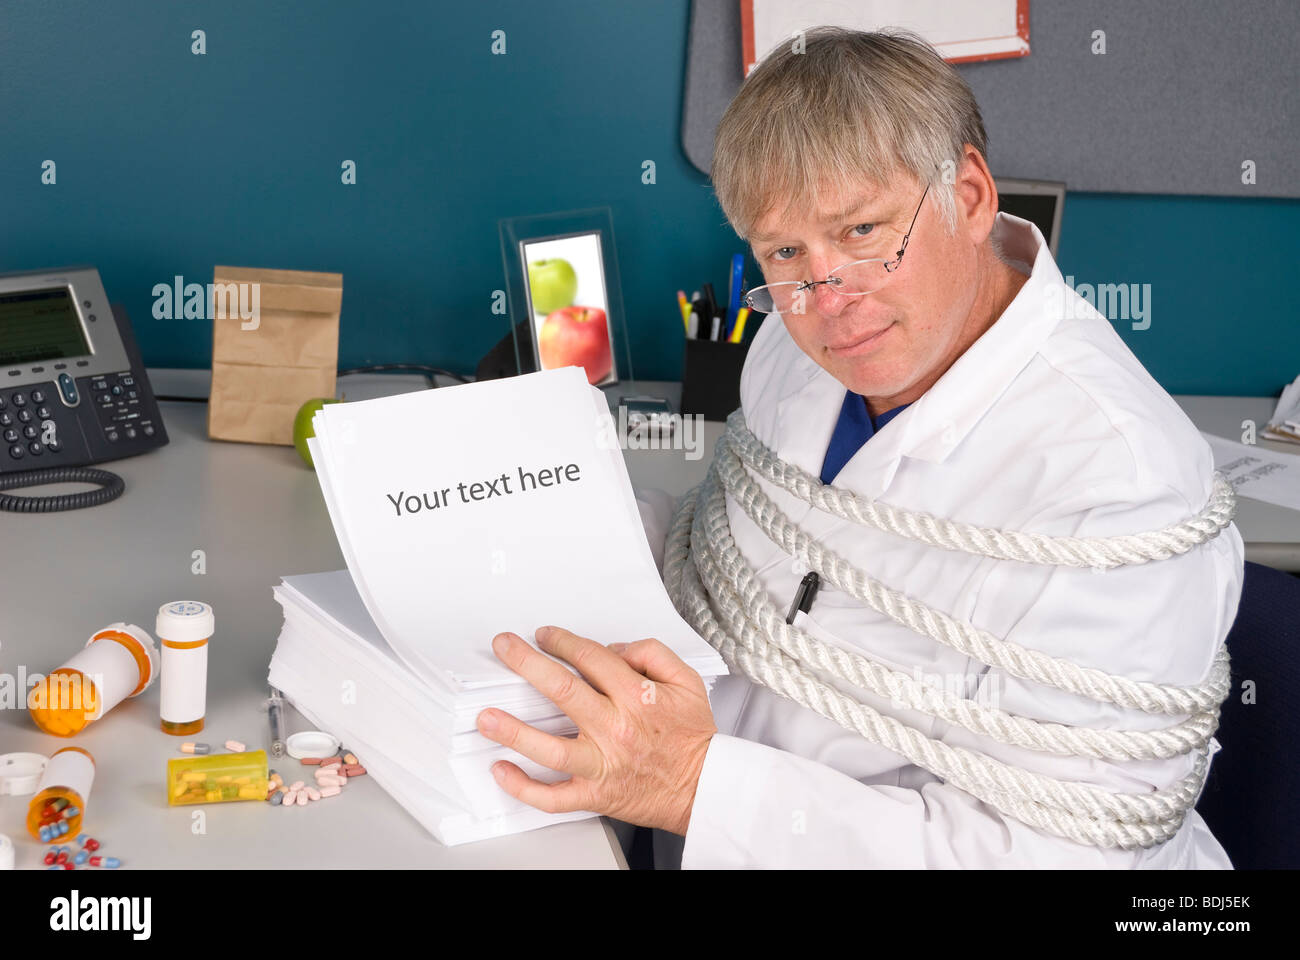 Un medico è legato con un carico di pratiche burocratiche gli impedisce di fare il suo lavoro. Foto Stock